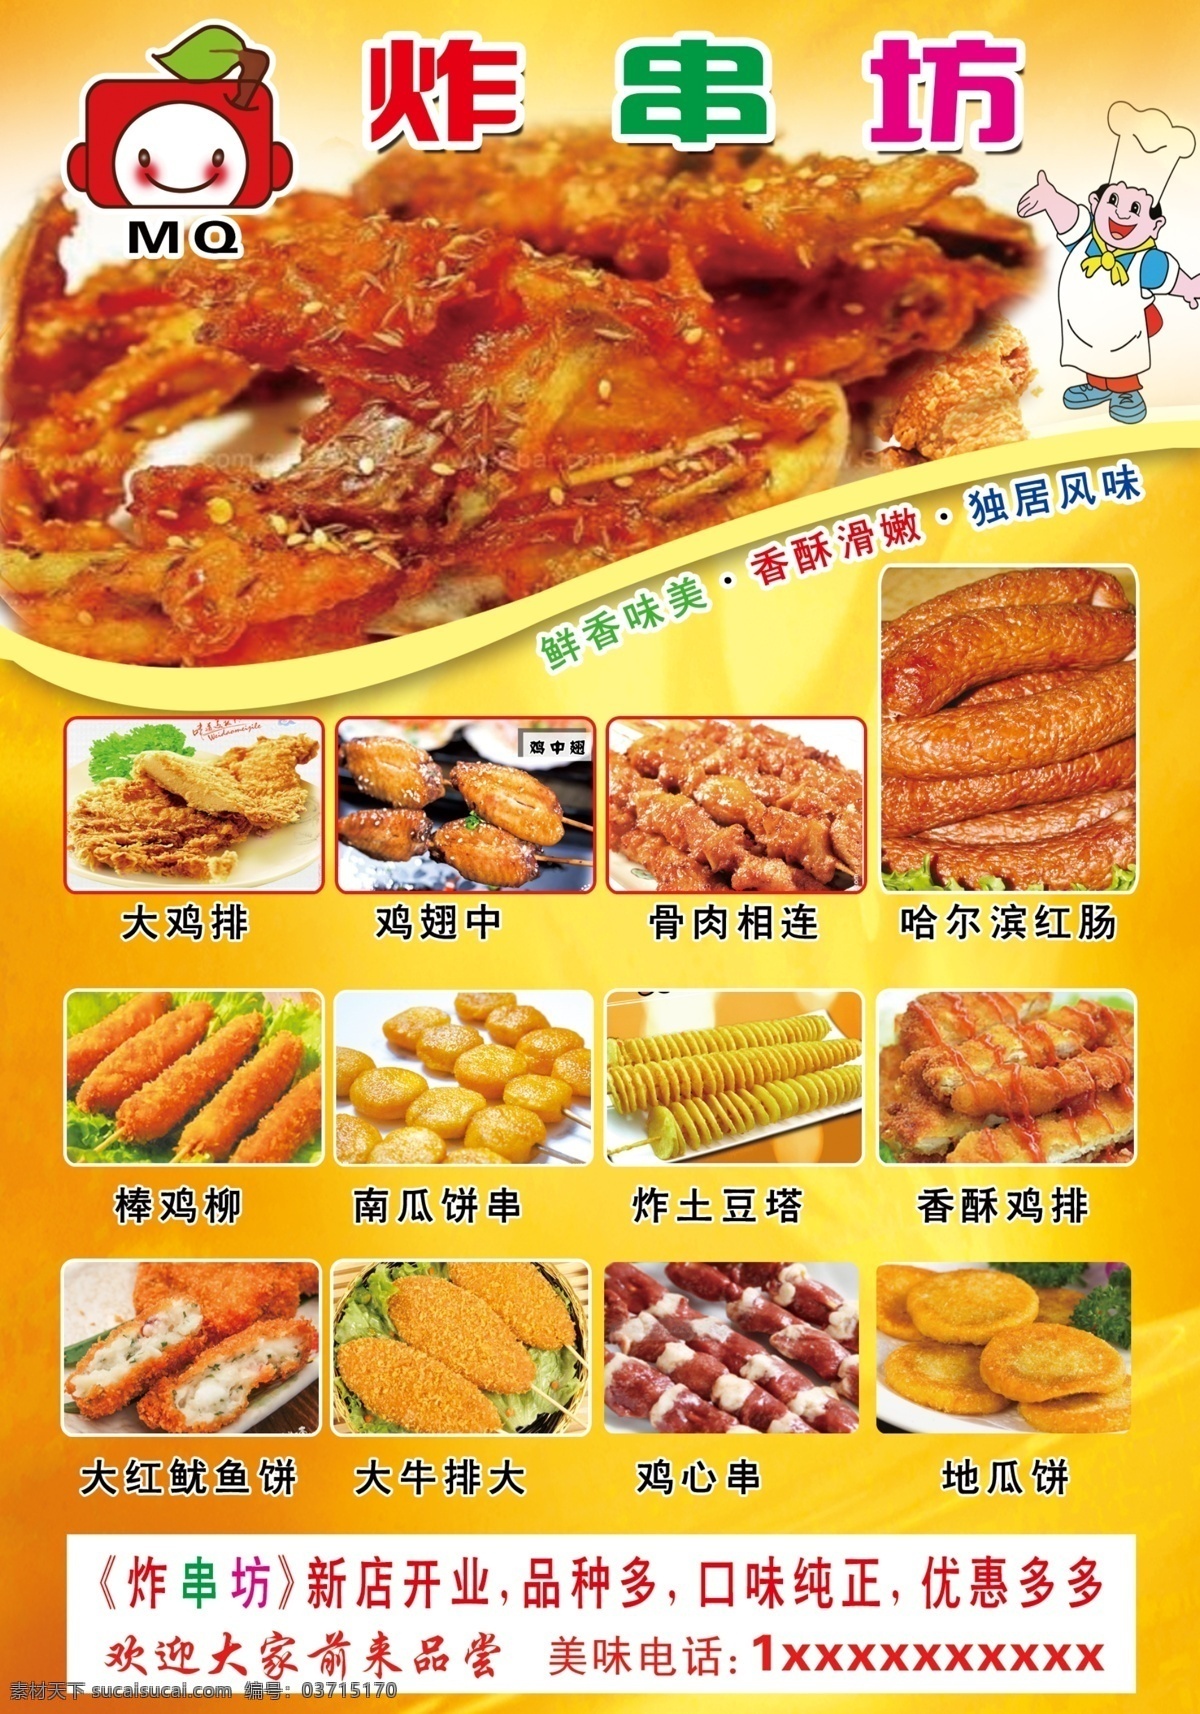 鸡柳 炸肠 炸鸡 烤串 炸糕 炸串传单 炸串海报 鸡米花 薯片 香酥炸鸡 jinguangsheji 分层